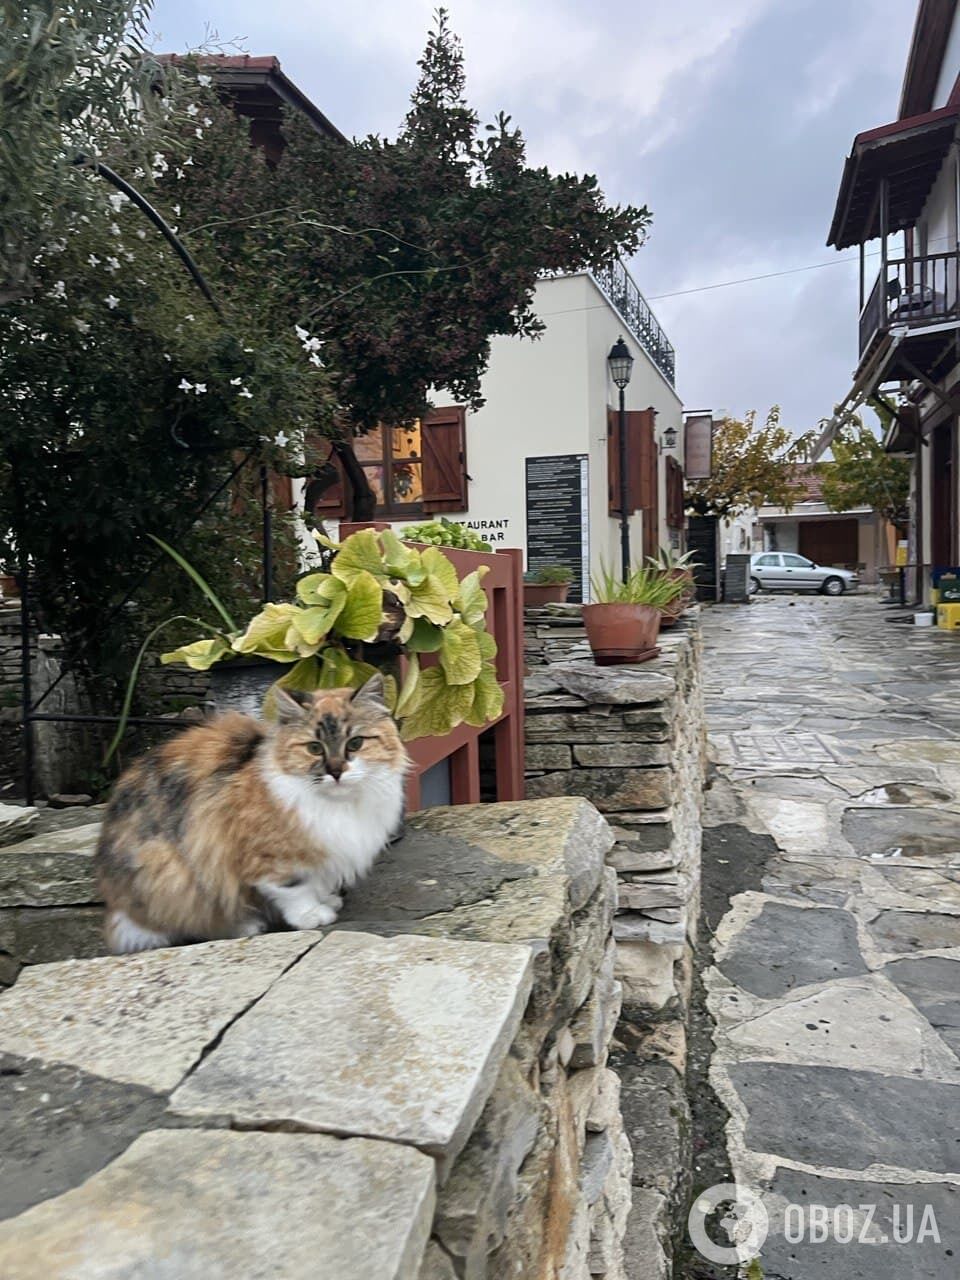 Кішки – один із головних символів Кіпру